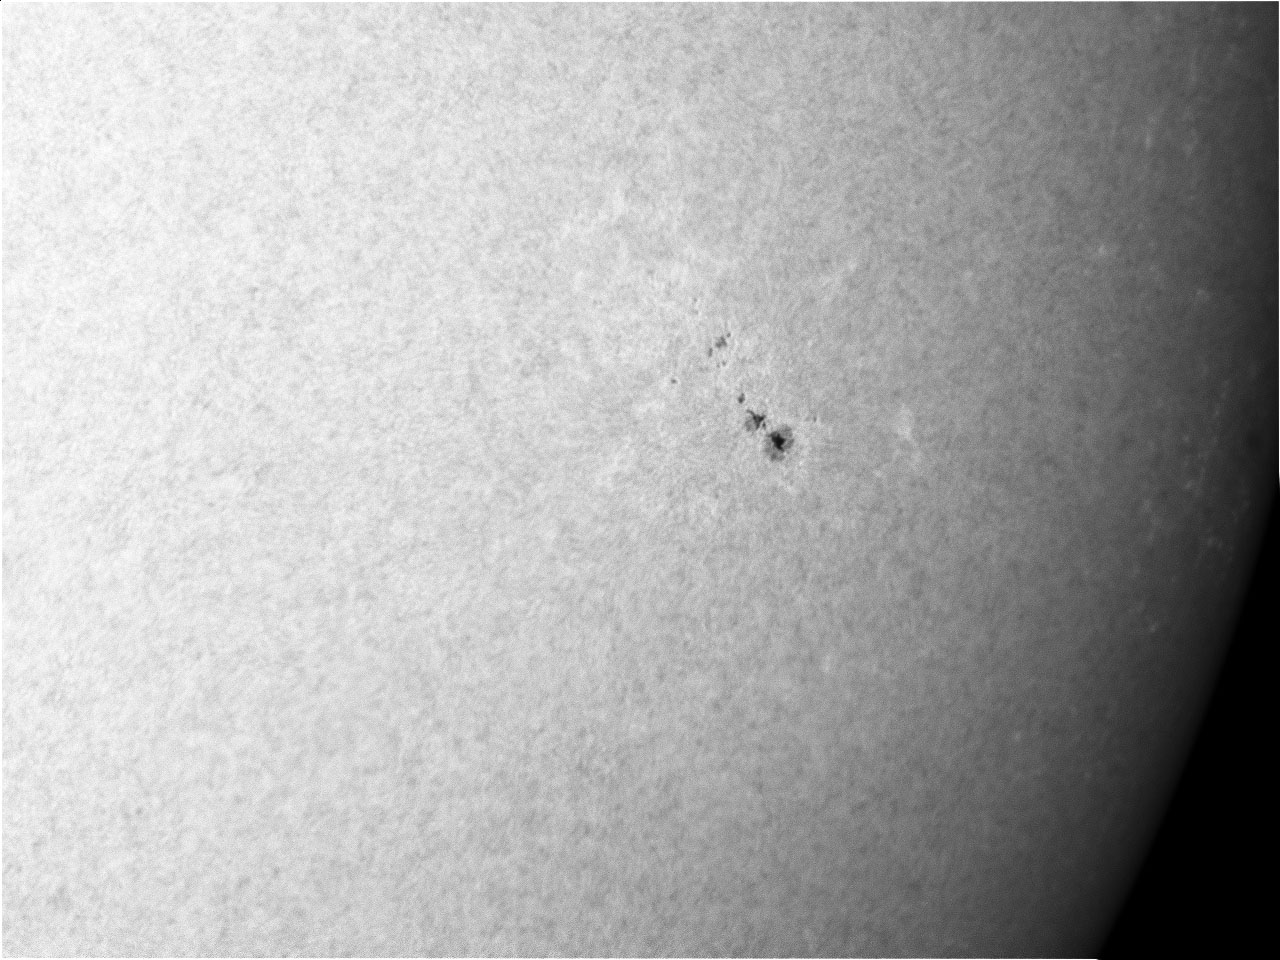 Sun_Herschel0013_1.jpg